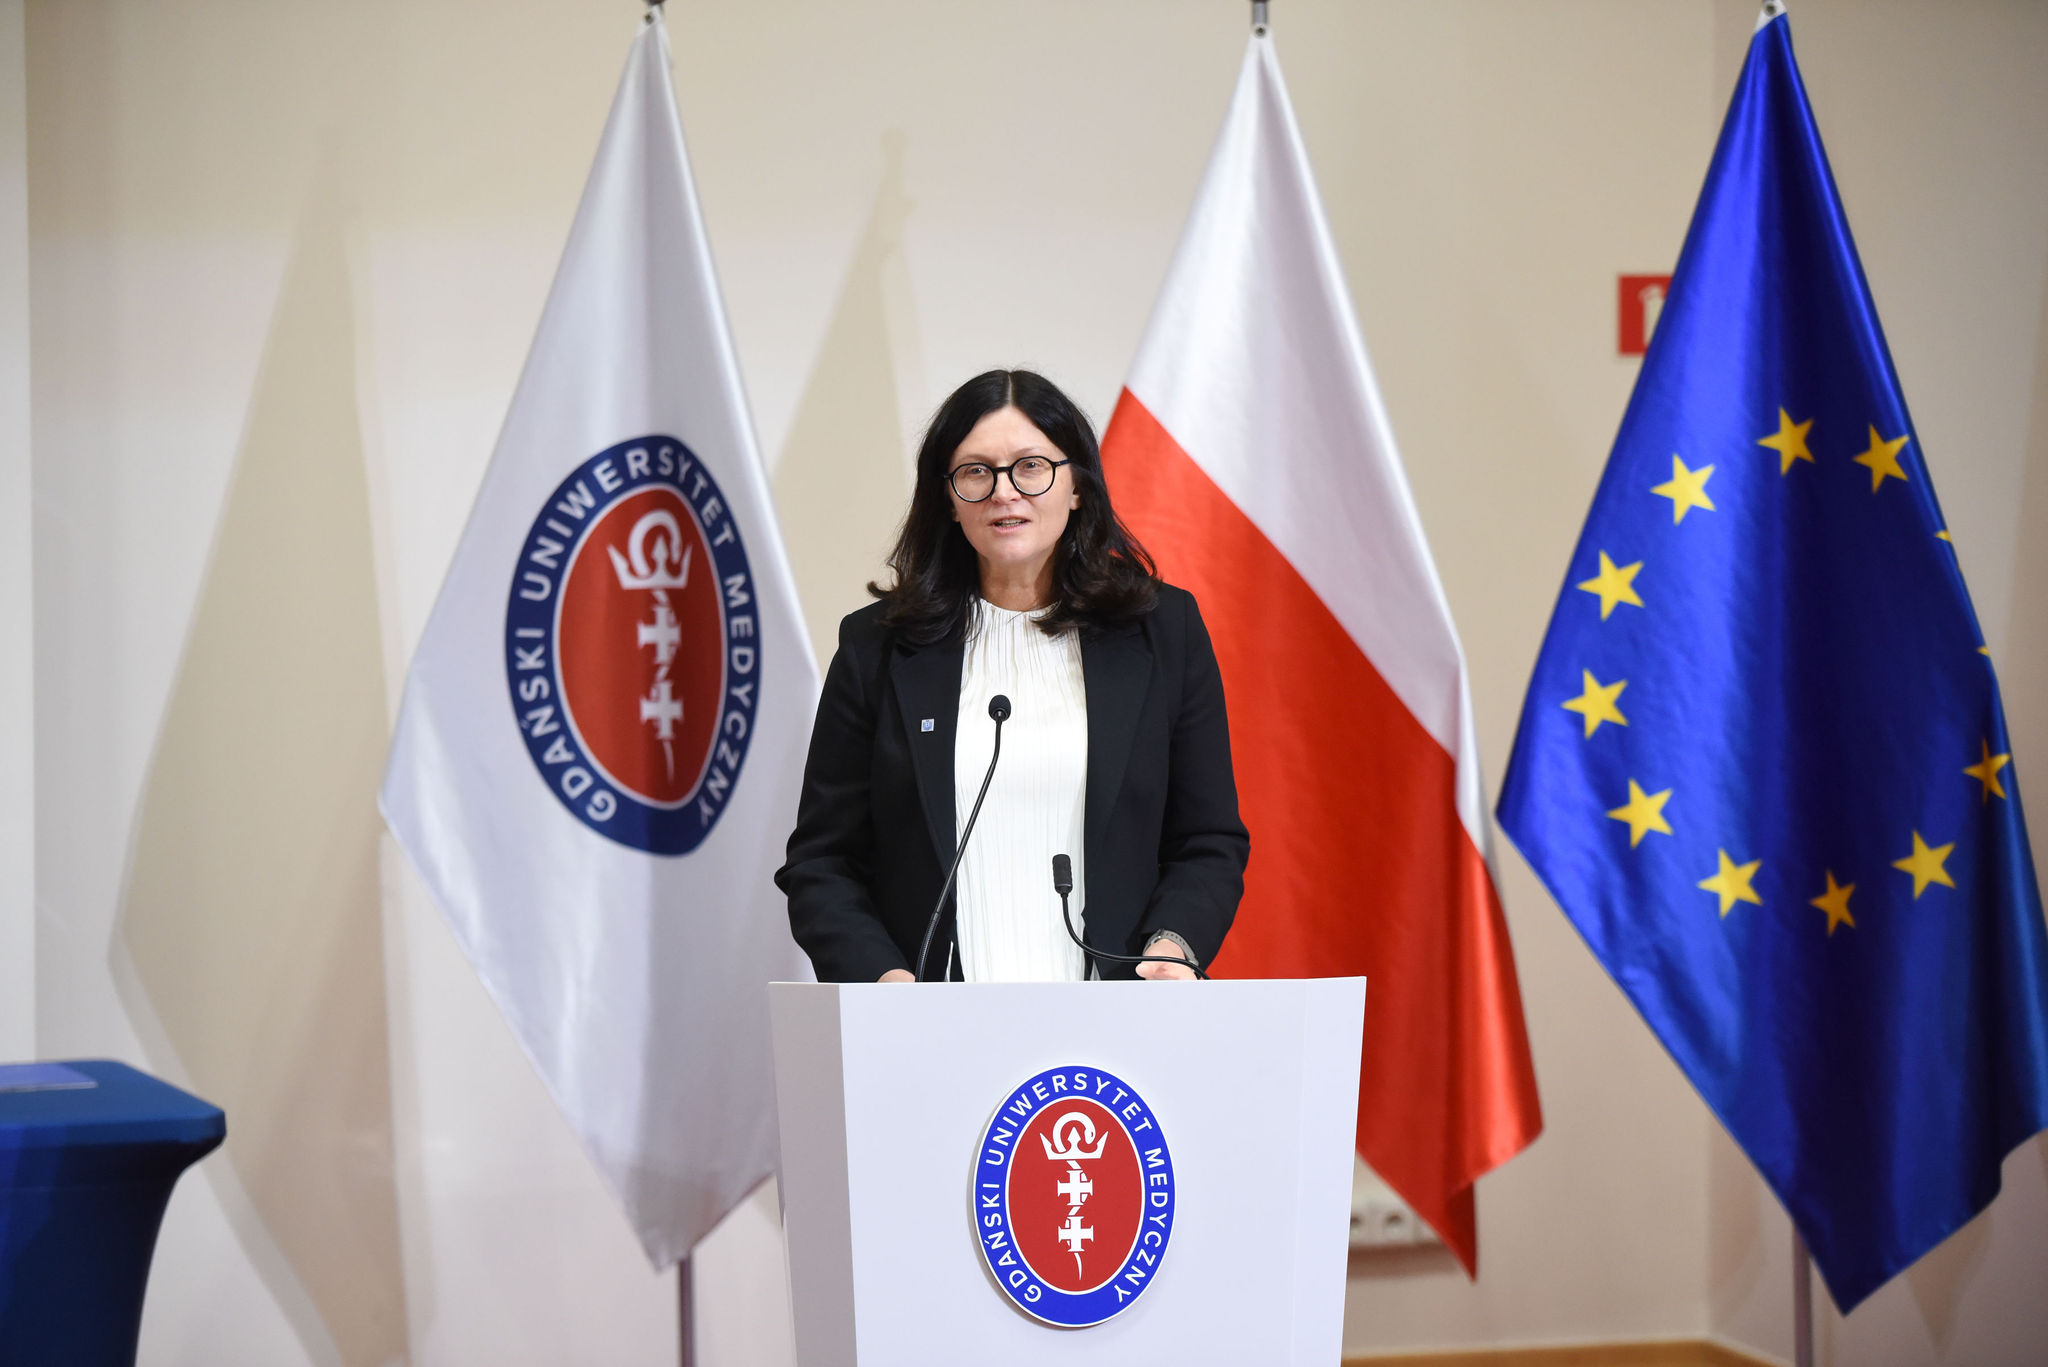 prof. Adriana Zaleska-Medynska during her speech